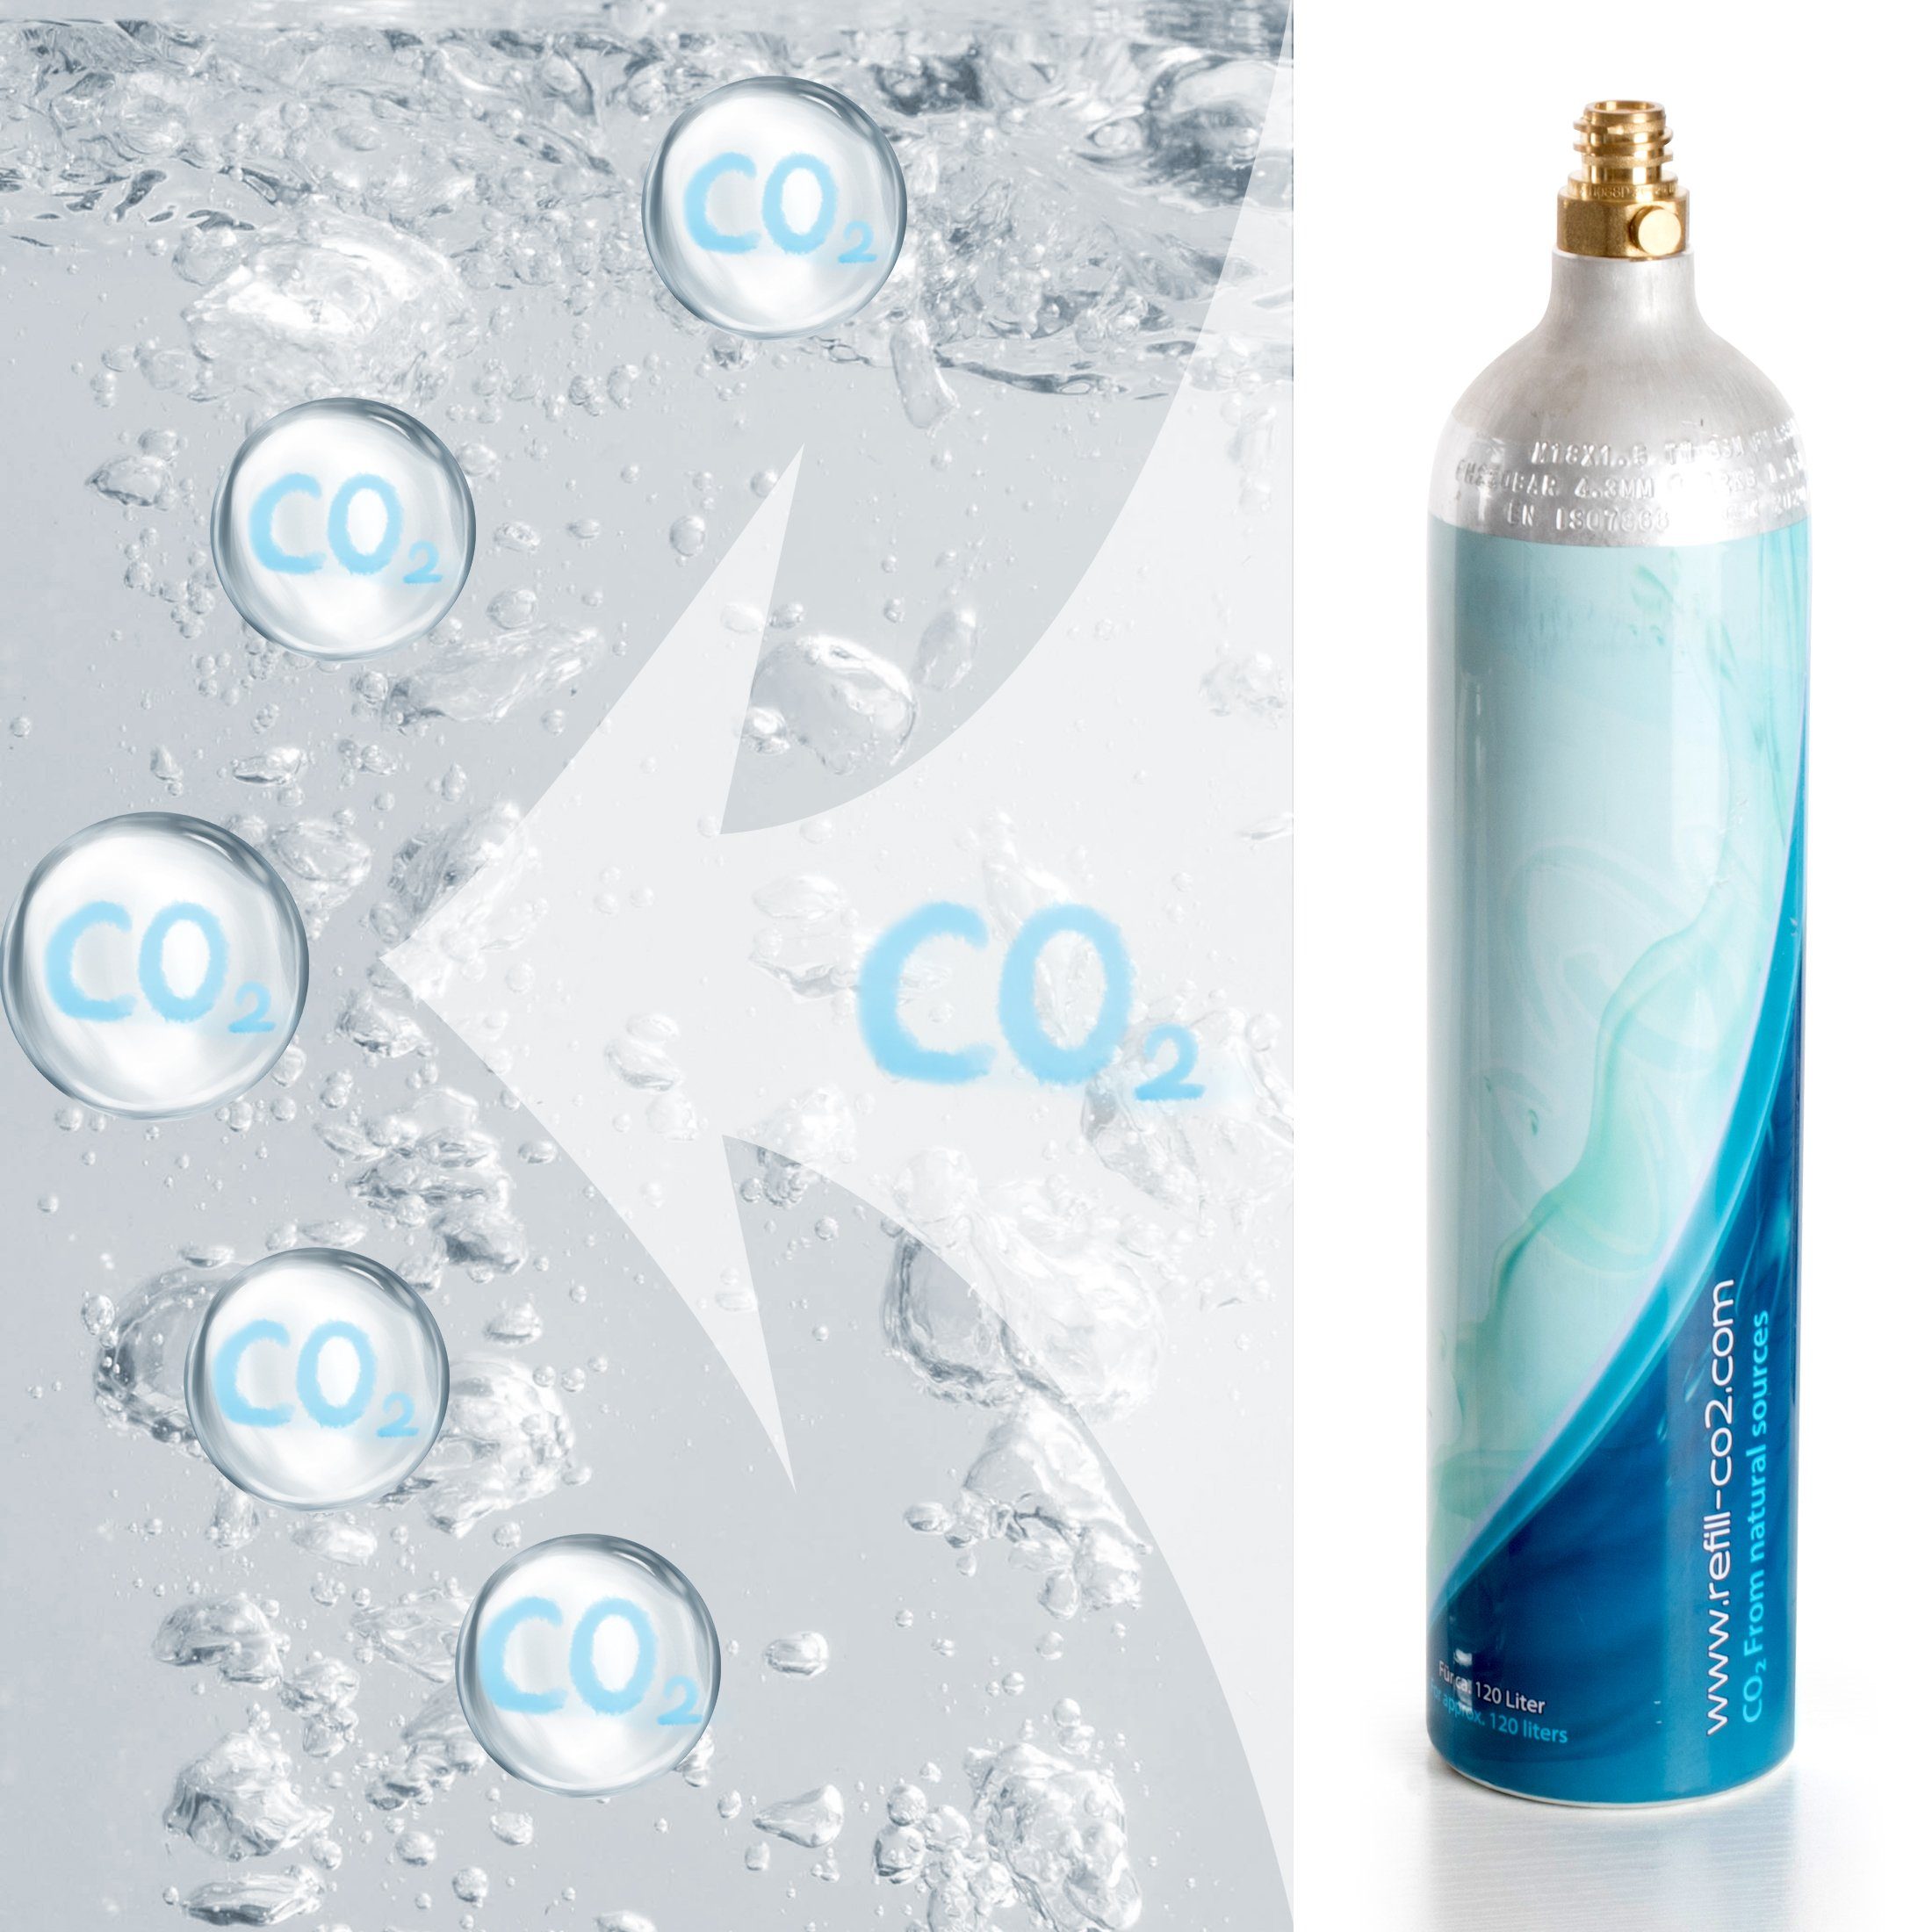 gefüllter Zoomyo Wassersprudler XXL doppeltem Flasche CO2 1,2 Liter Kohlensäure, 1,2 Zylinder Liter Inhalt: mit